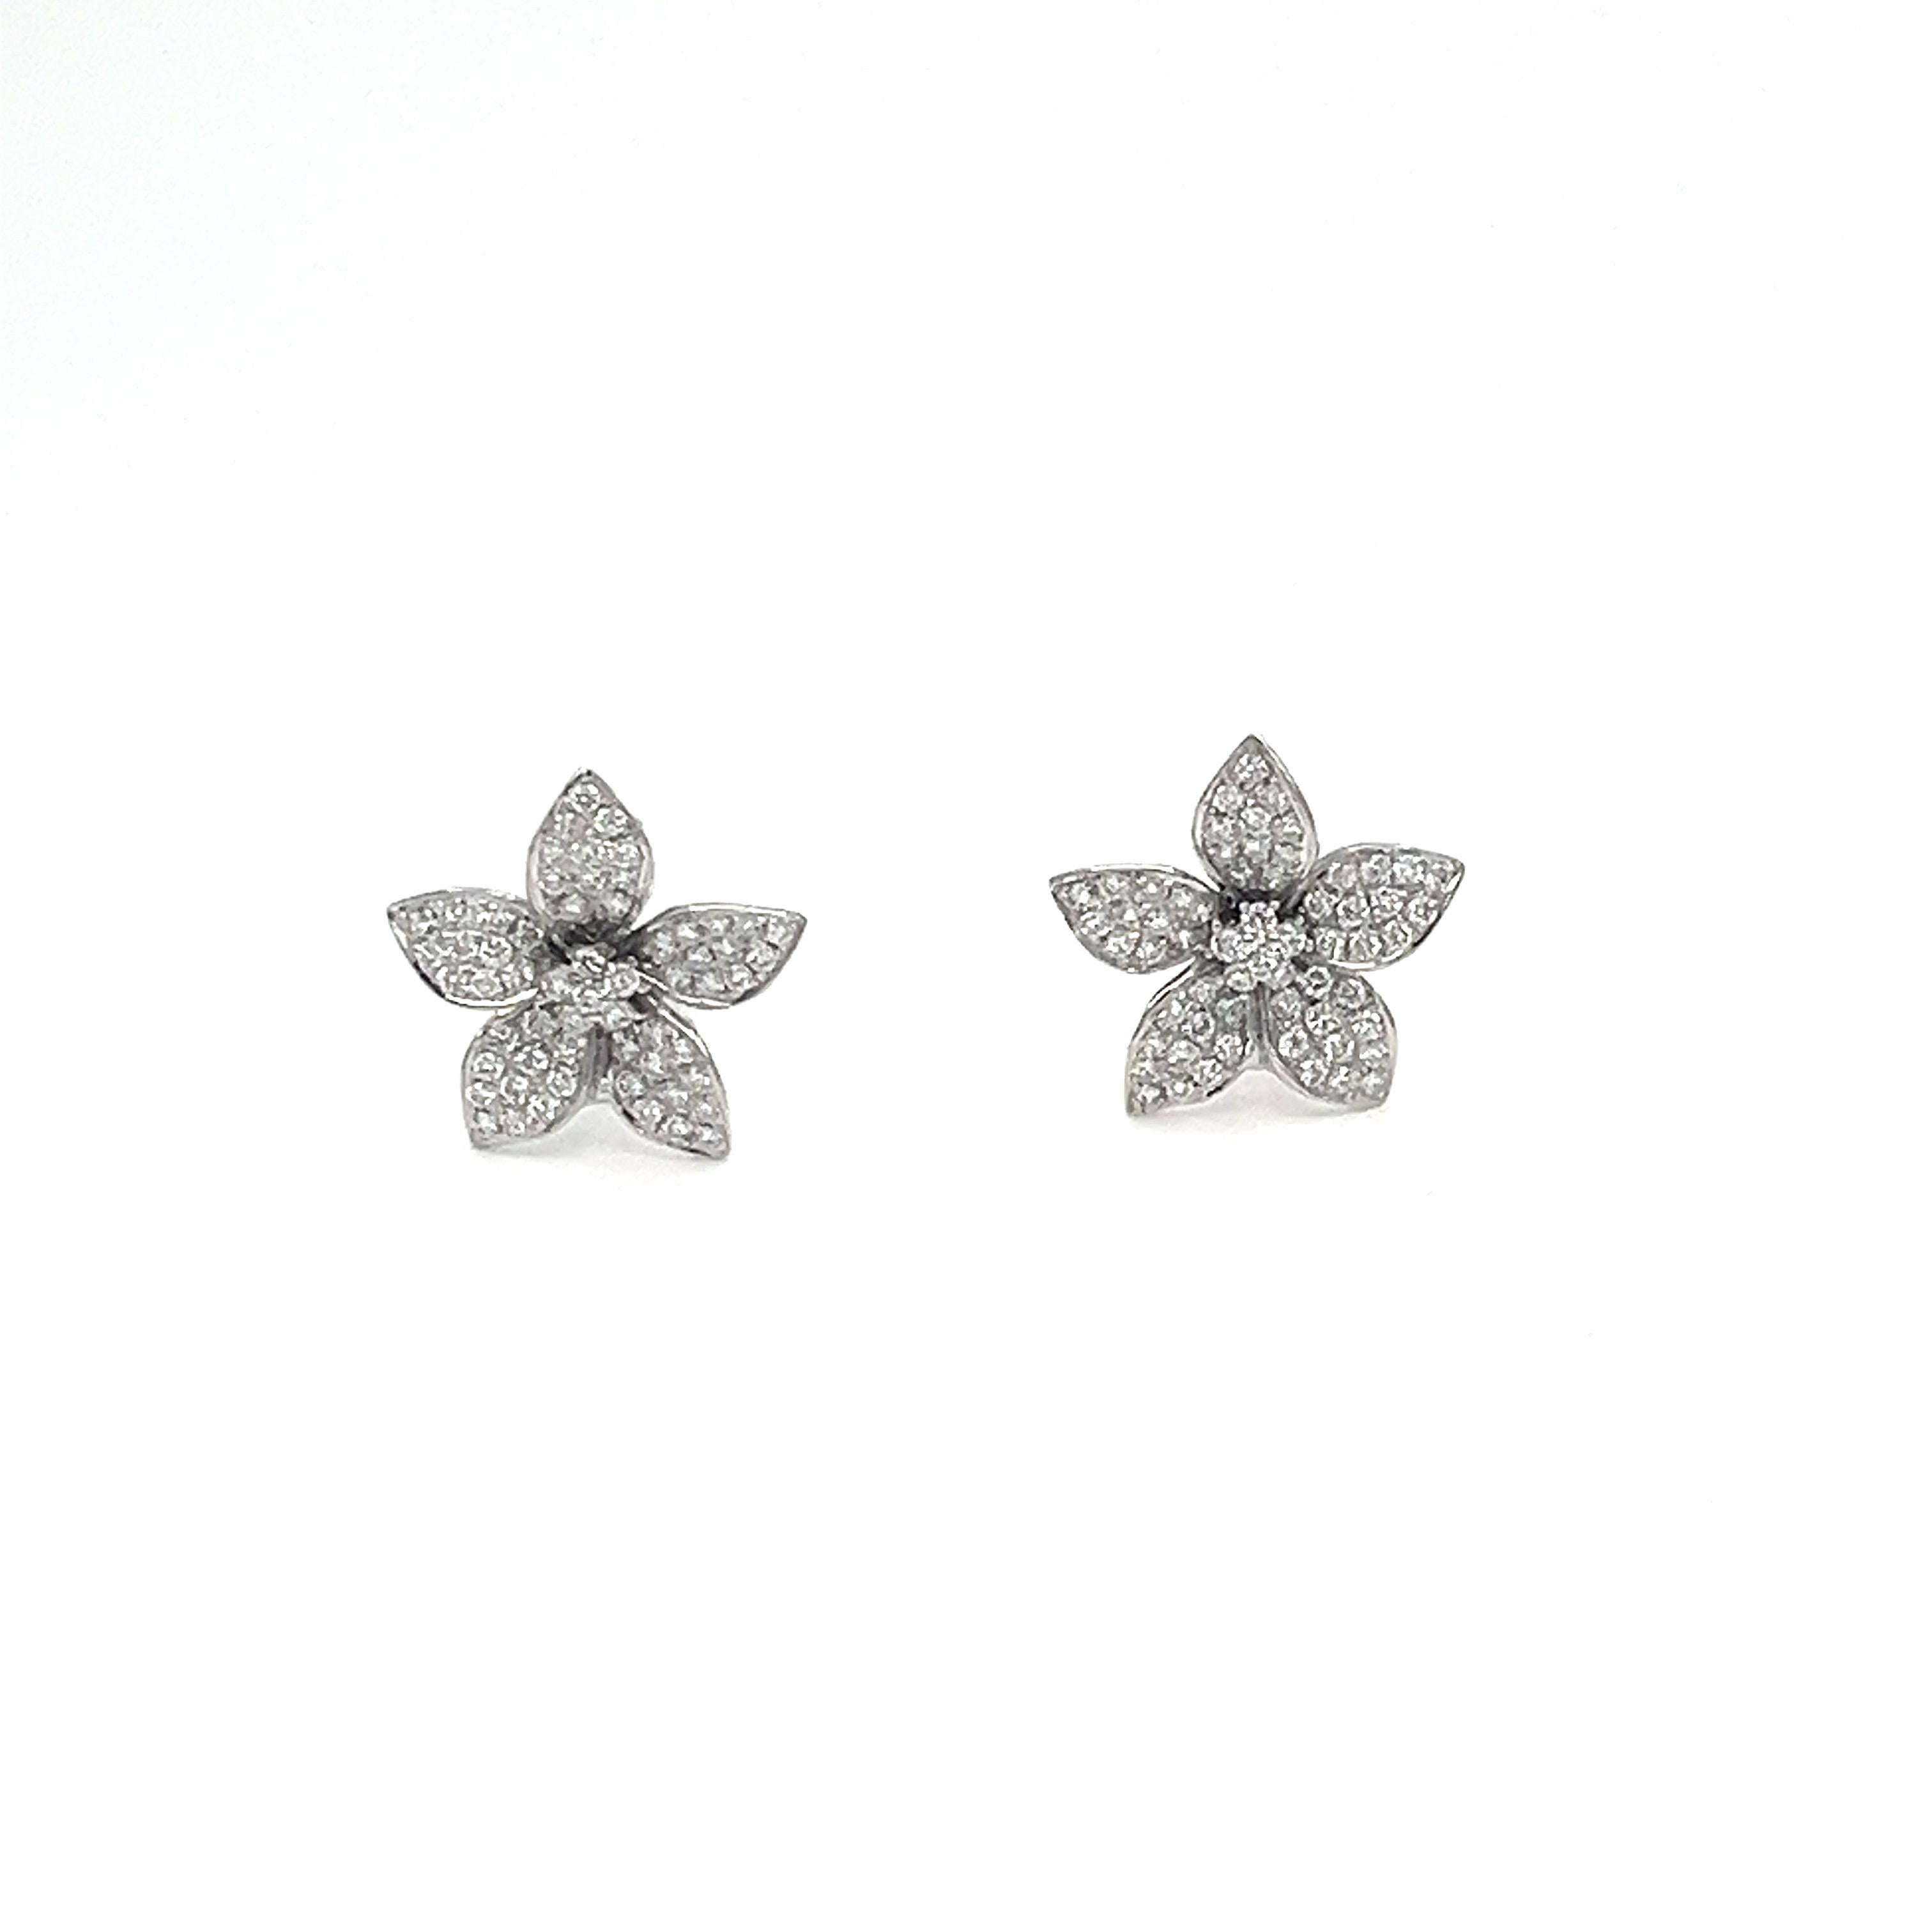 Ces boucles d'oreilles fleuries pesant 1,48 ct sont serties de 142 diamants de couleur E/F et de pureté VS1/VS2. Un excellent complément à toute garde-robe. 